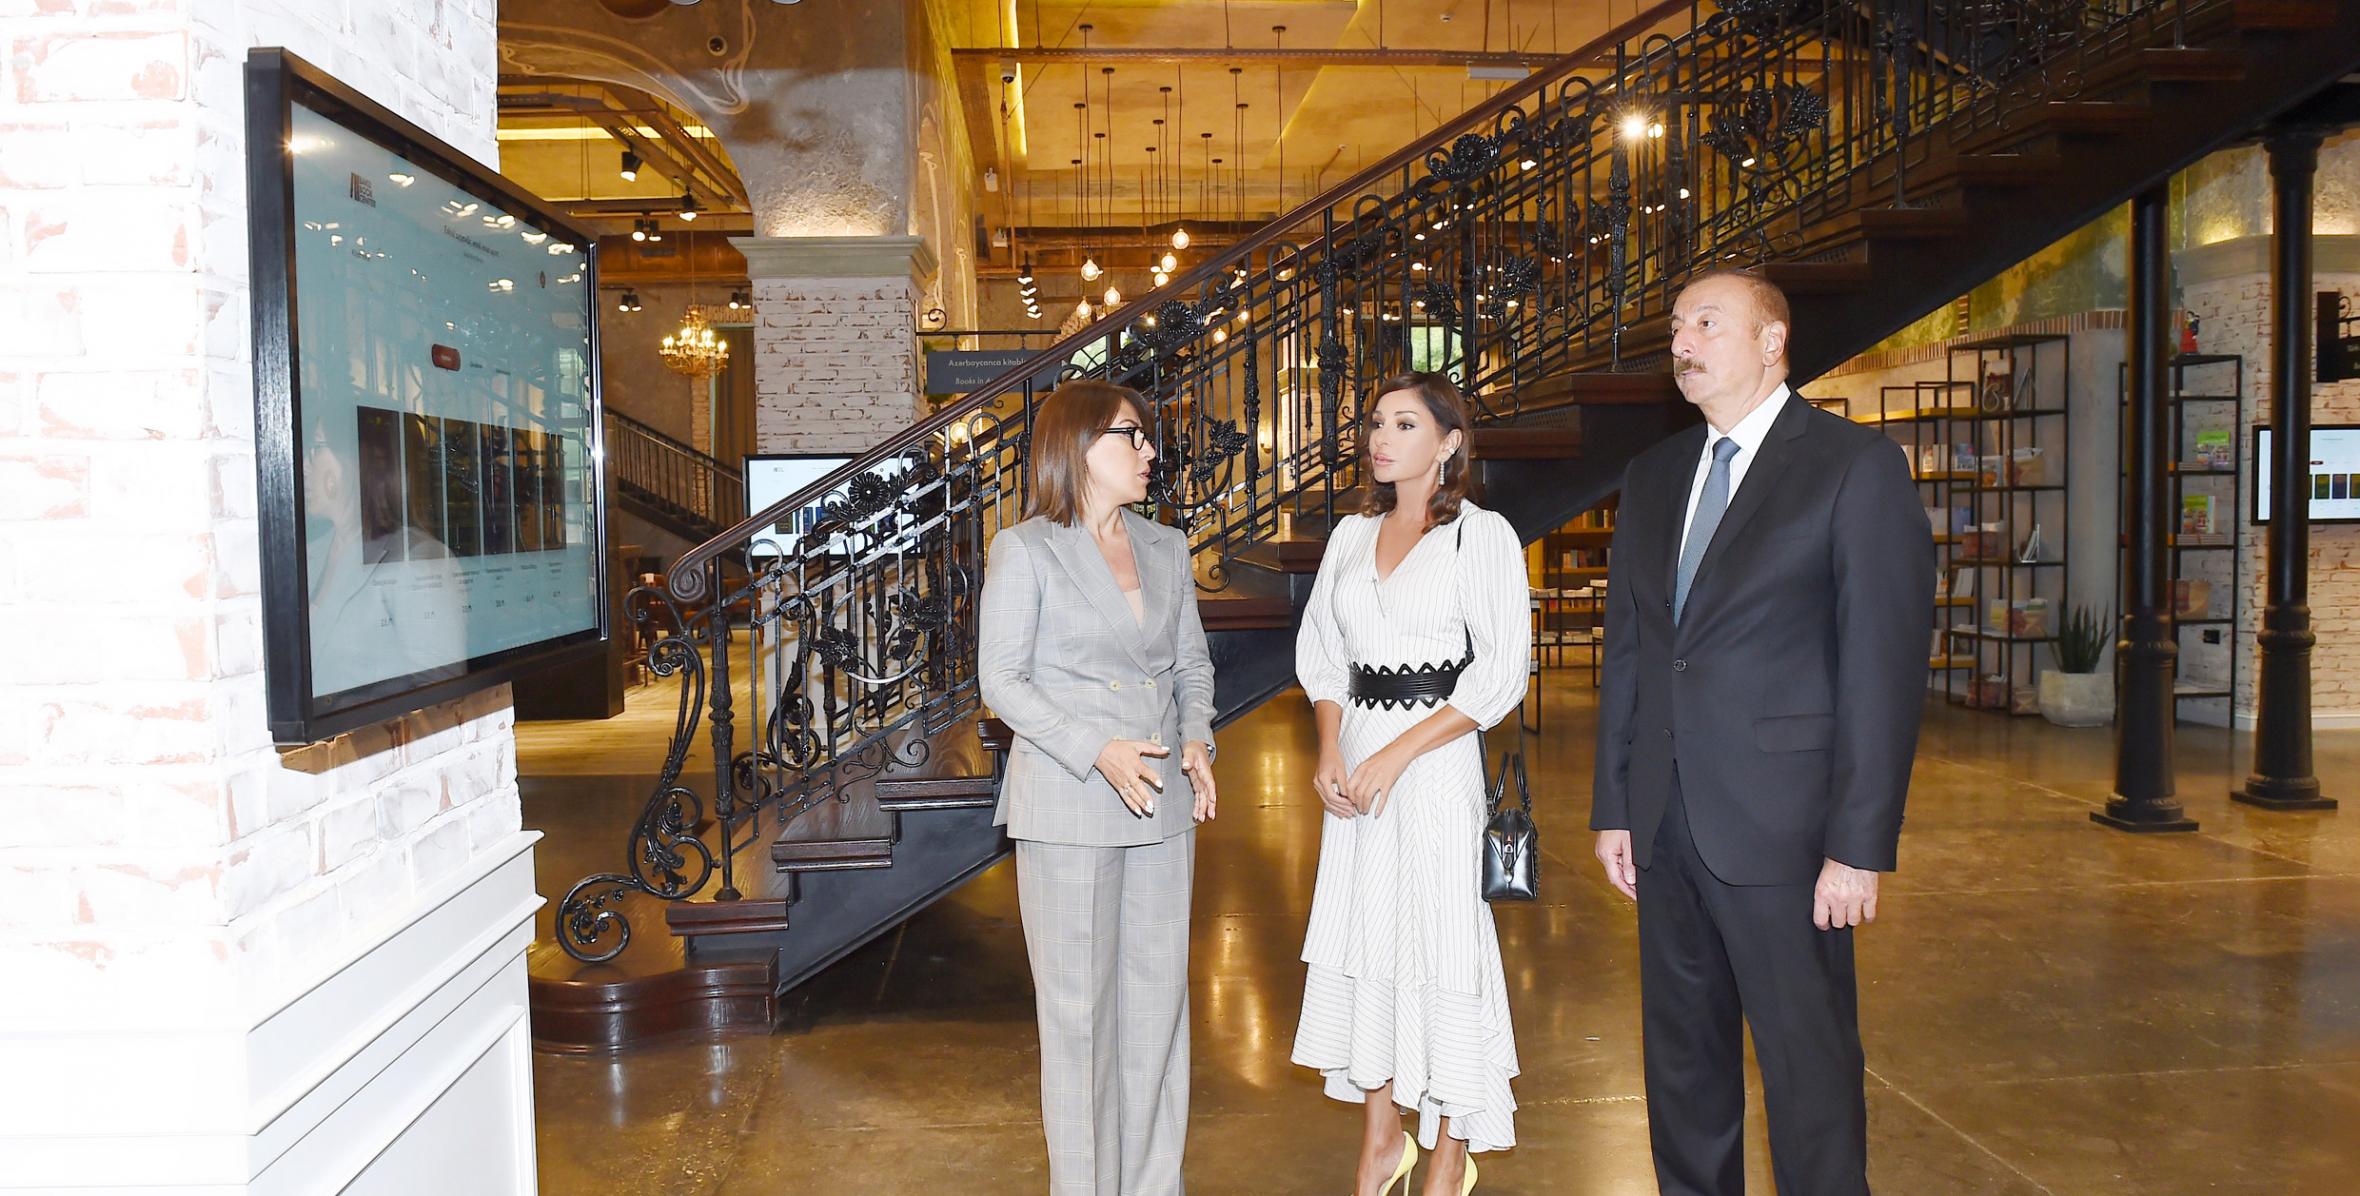 Ильхам Алиев принял участие в открытии Бакинского книжного центра, созданного по инициативе Фонда Гейдара Алиева